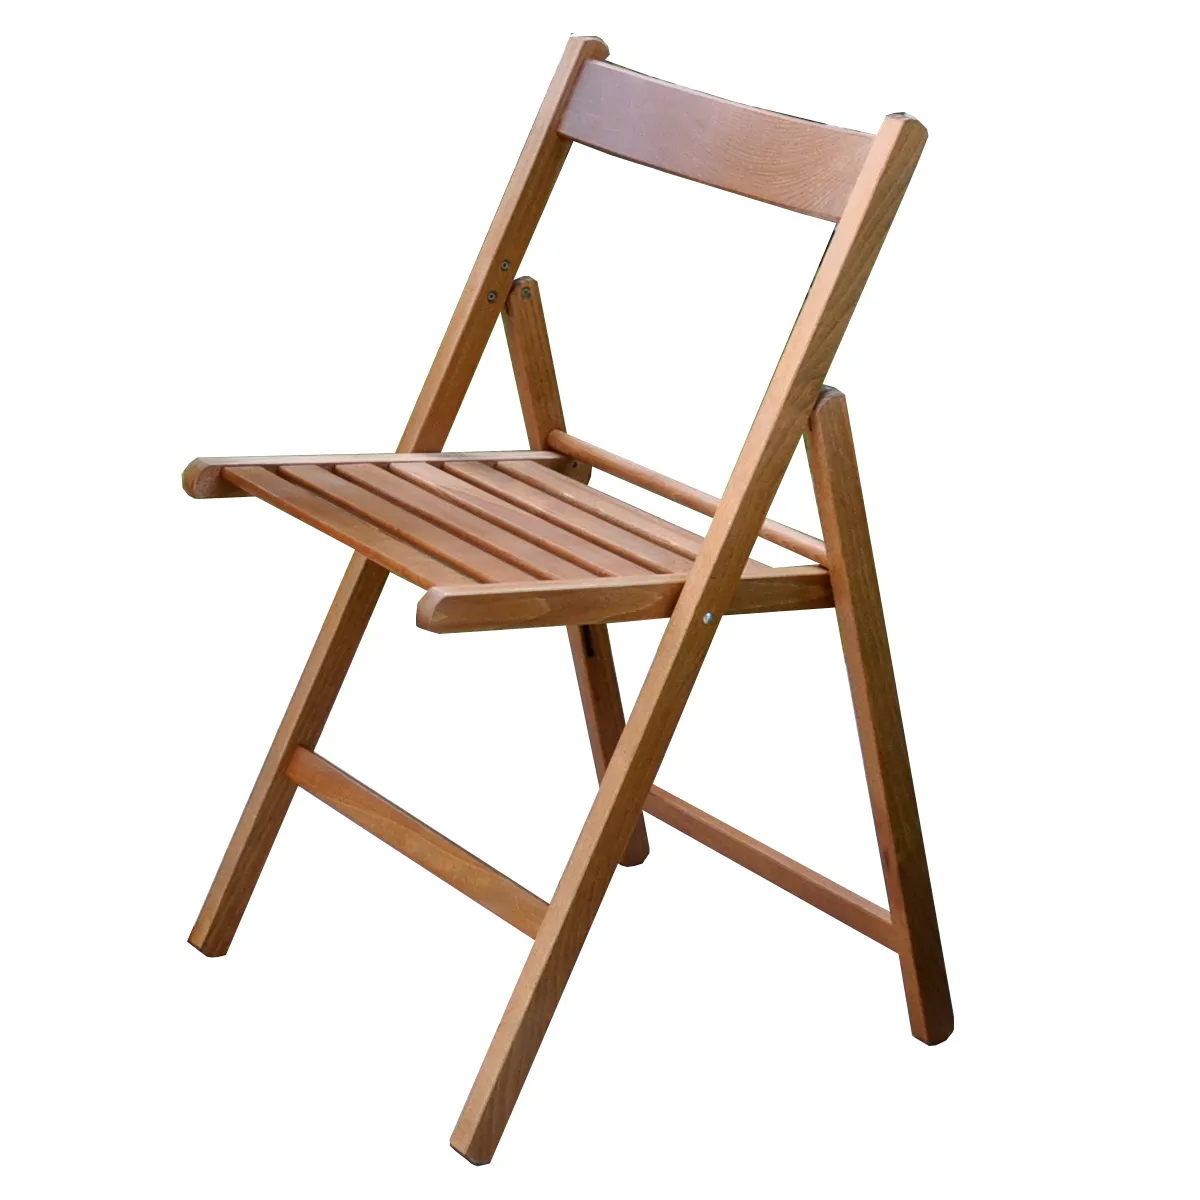 عالية الجودة كرسي قابل للطي المصنوعة في إيطاليا في خشب الزان مع الكتف المنحني ساعة سعيدة لون الجوز للحديقة والفناء استخدام